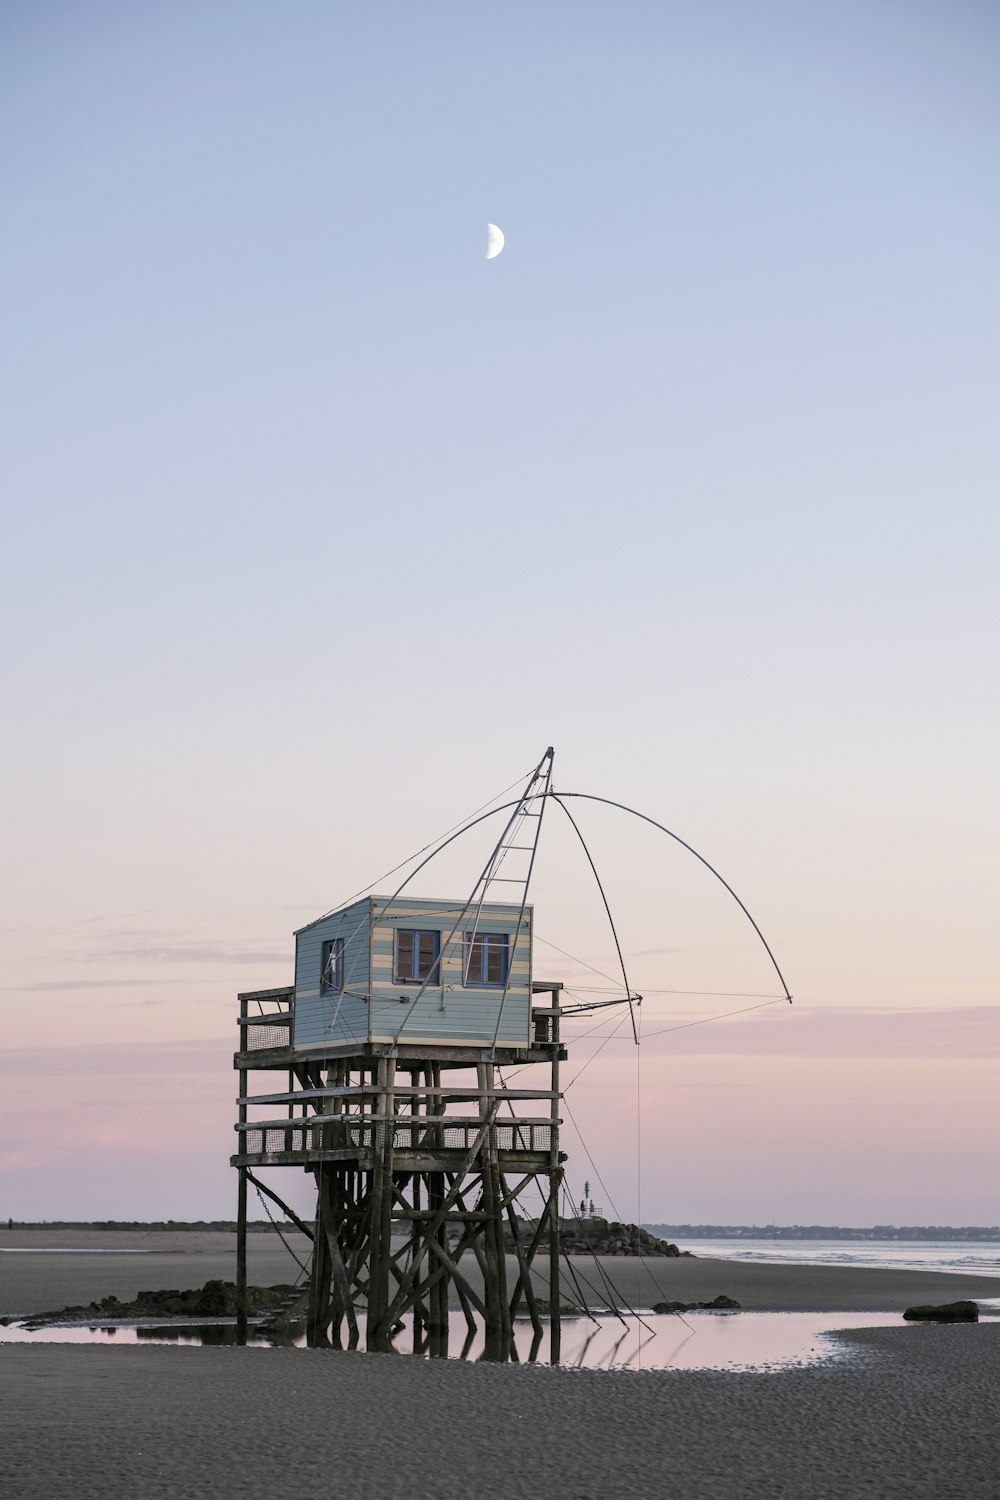 a house on stilts on the beach with a half moon in the sky